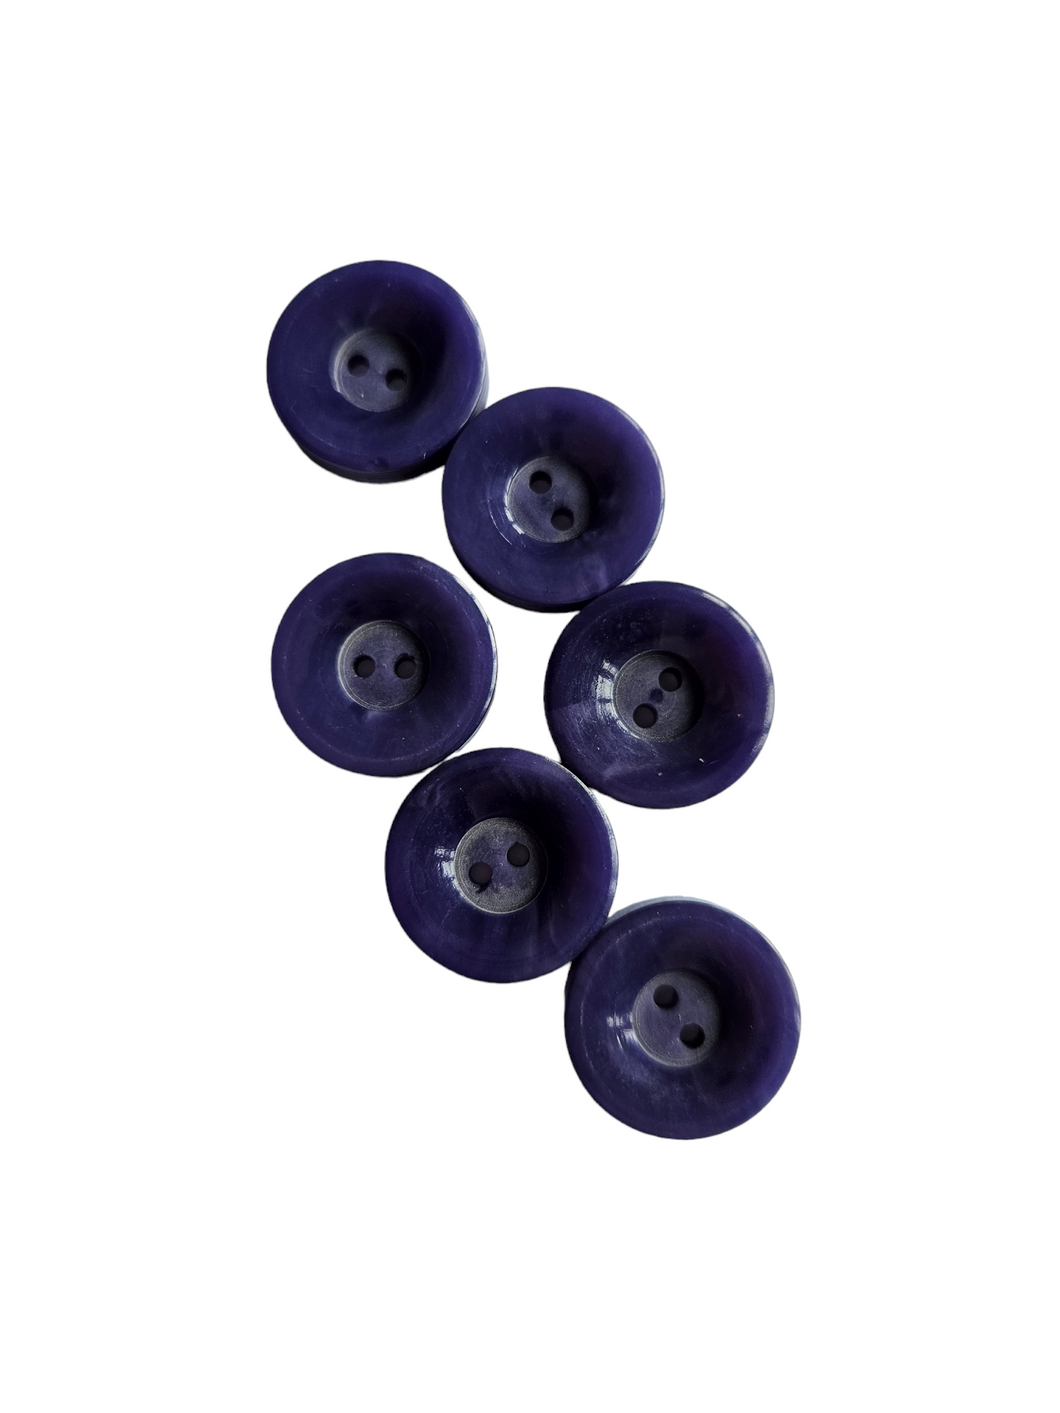 1940s Violet Blue/Purple Buttons